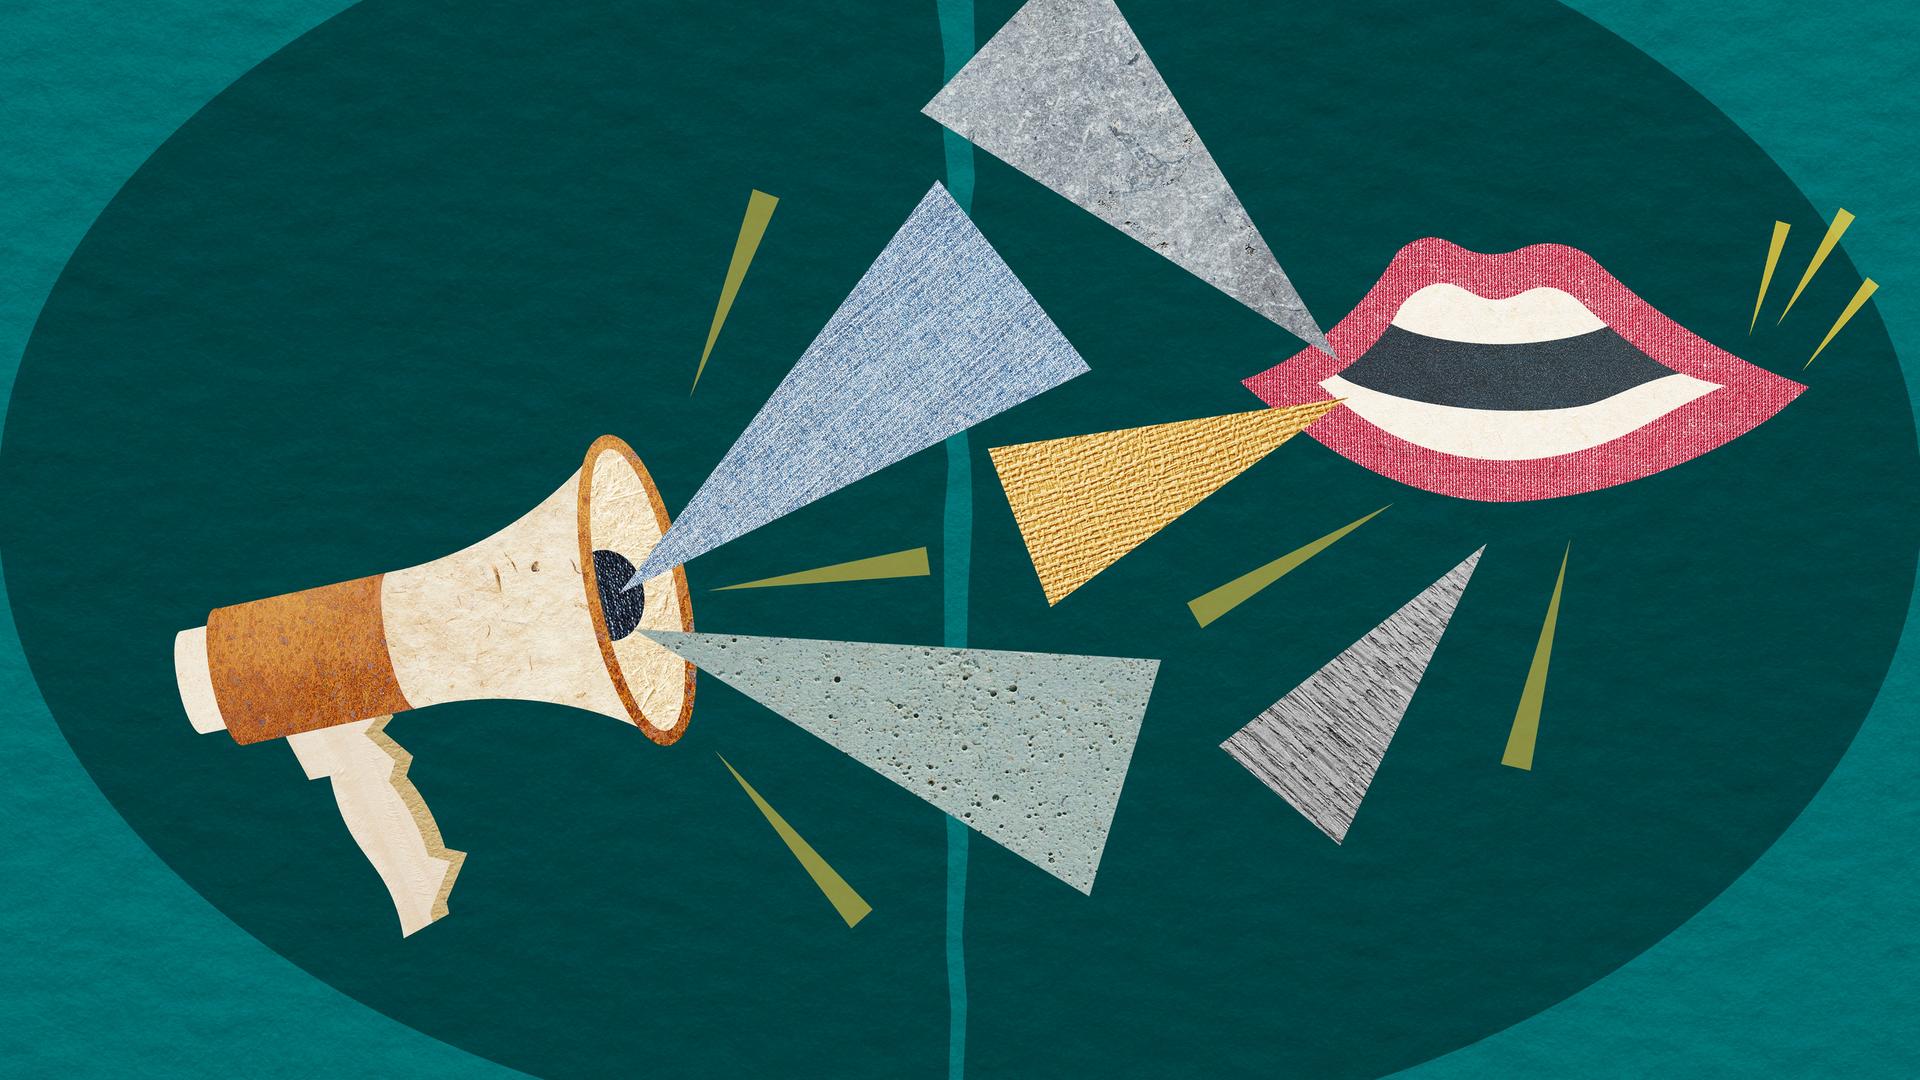 Illustration eines Megafons und eines Mundes vor denen dreieckförmige Papierstücken schweben, die Laute symbolisieren